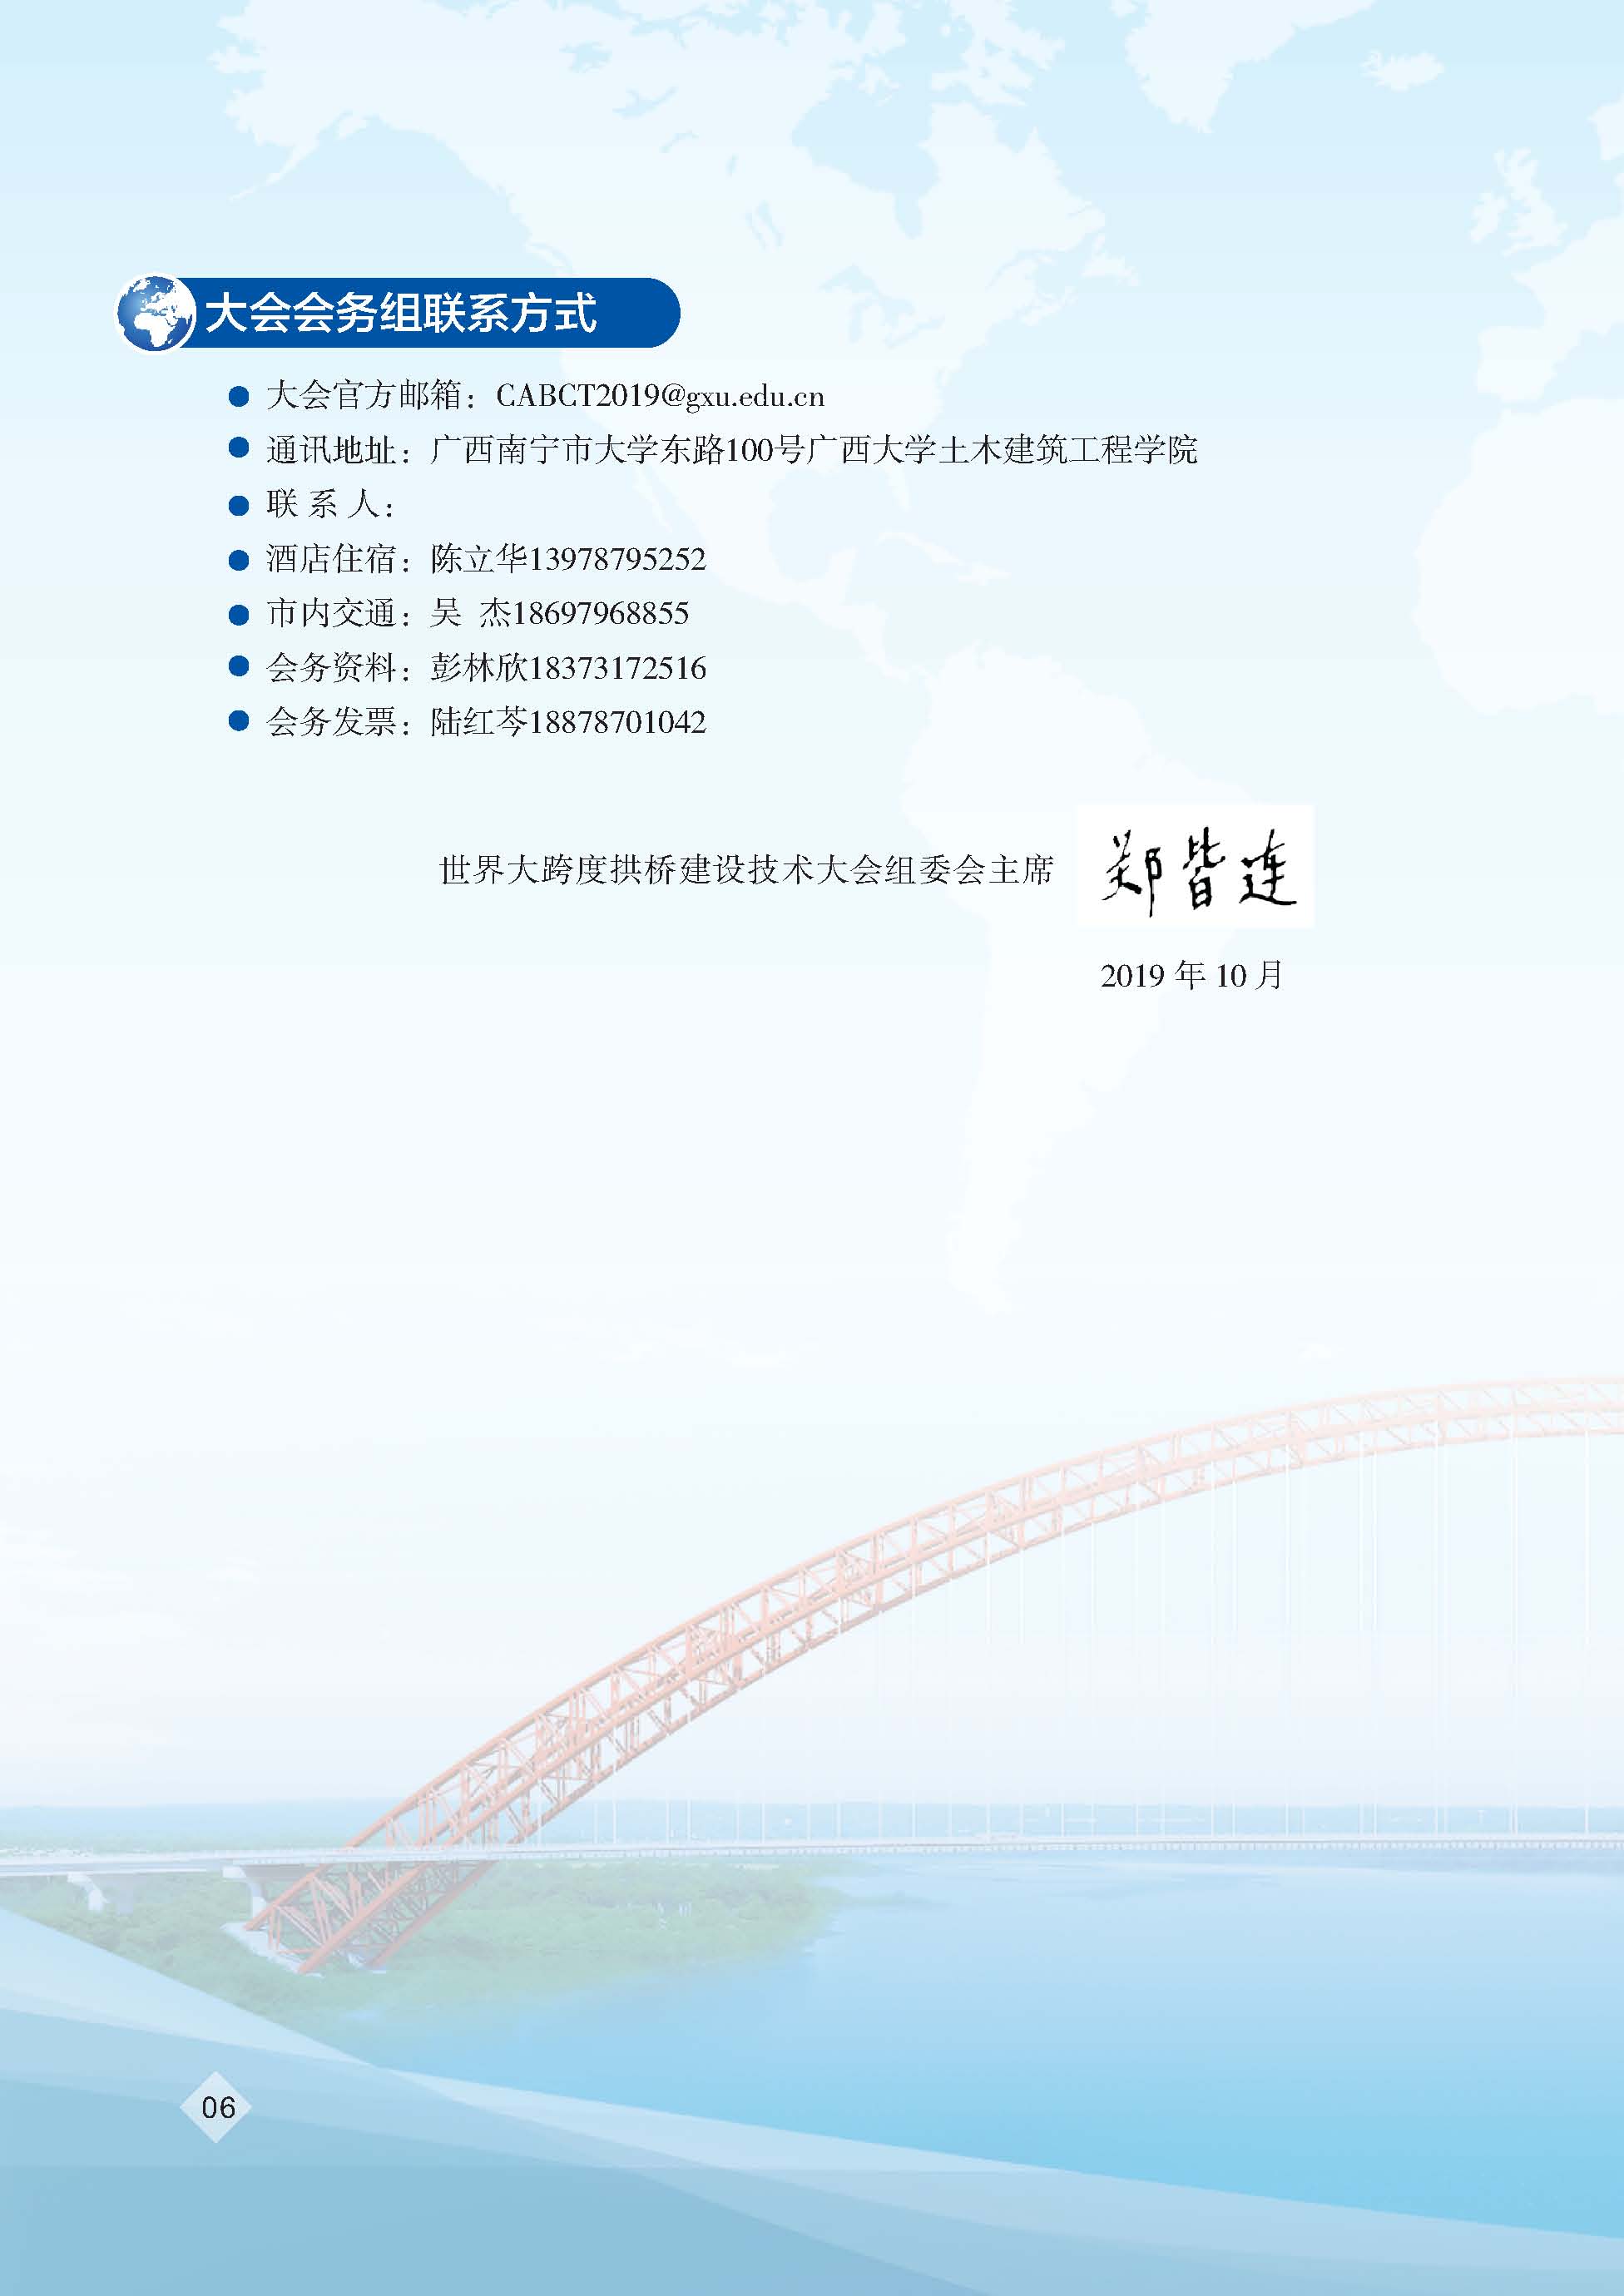 世界大跨度拱桥建设技术大会资料2号通知_页面_08